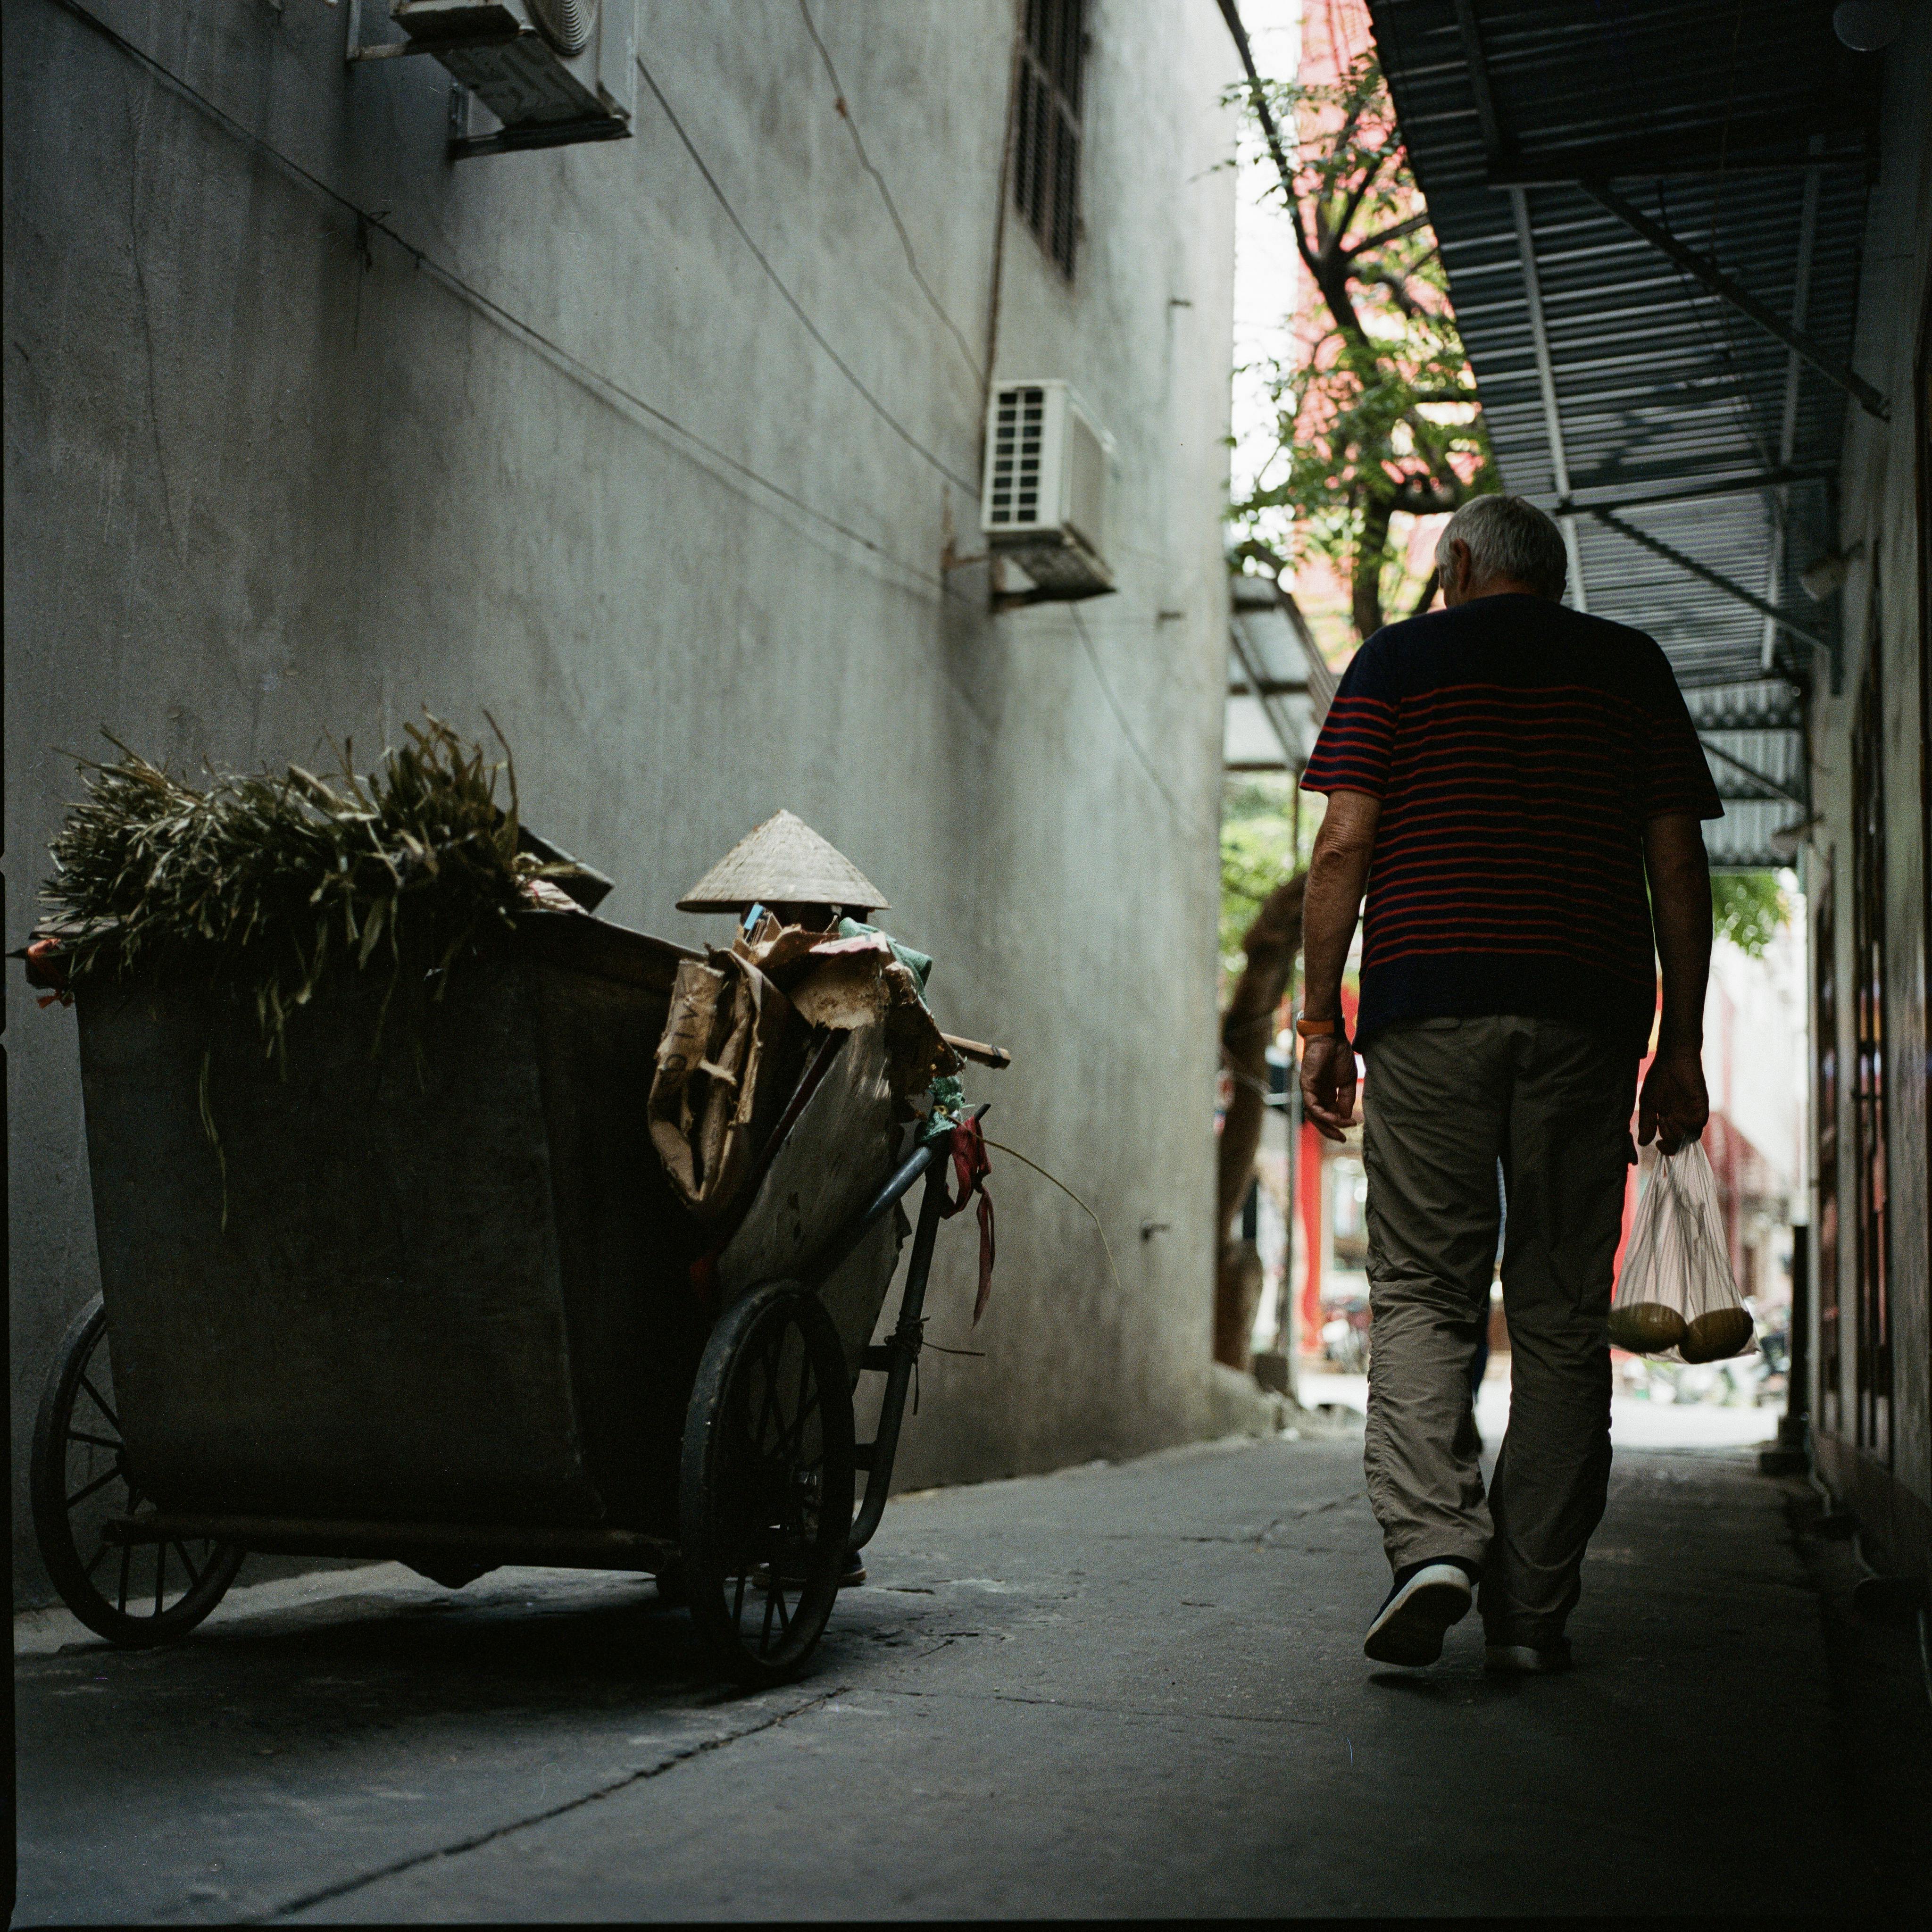 free-photo-of-man-walking-near-trailer-in-alley-in-town.jpeg